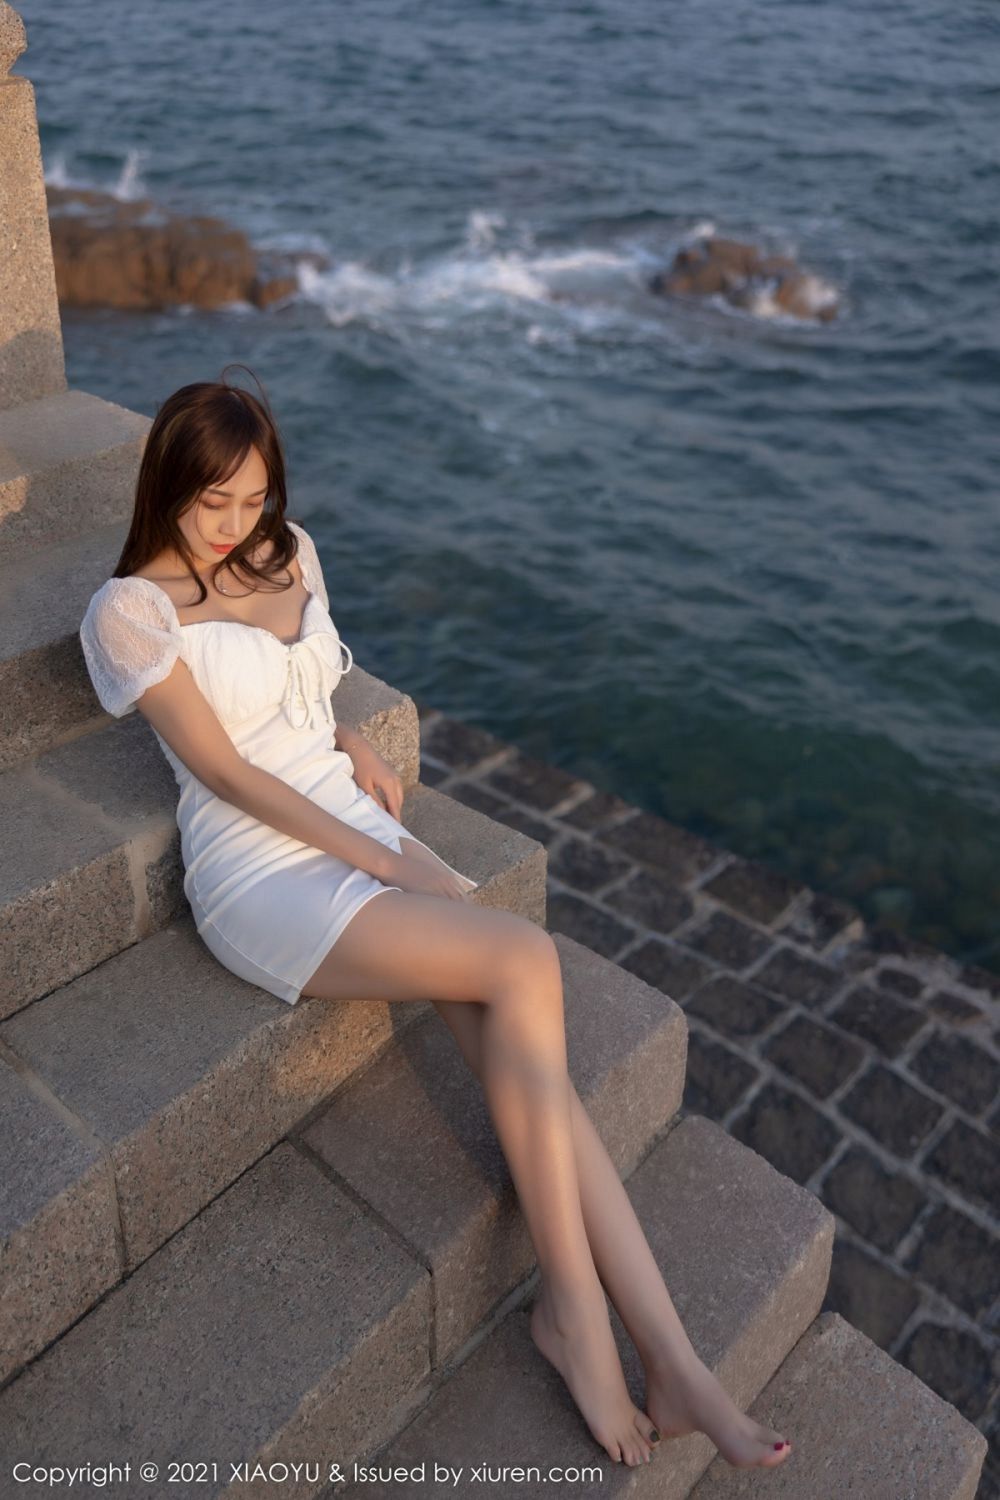 美女模特郑颖姗Bev白色裙子搭配白色丝袜青岛旅拍